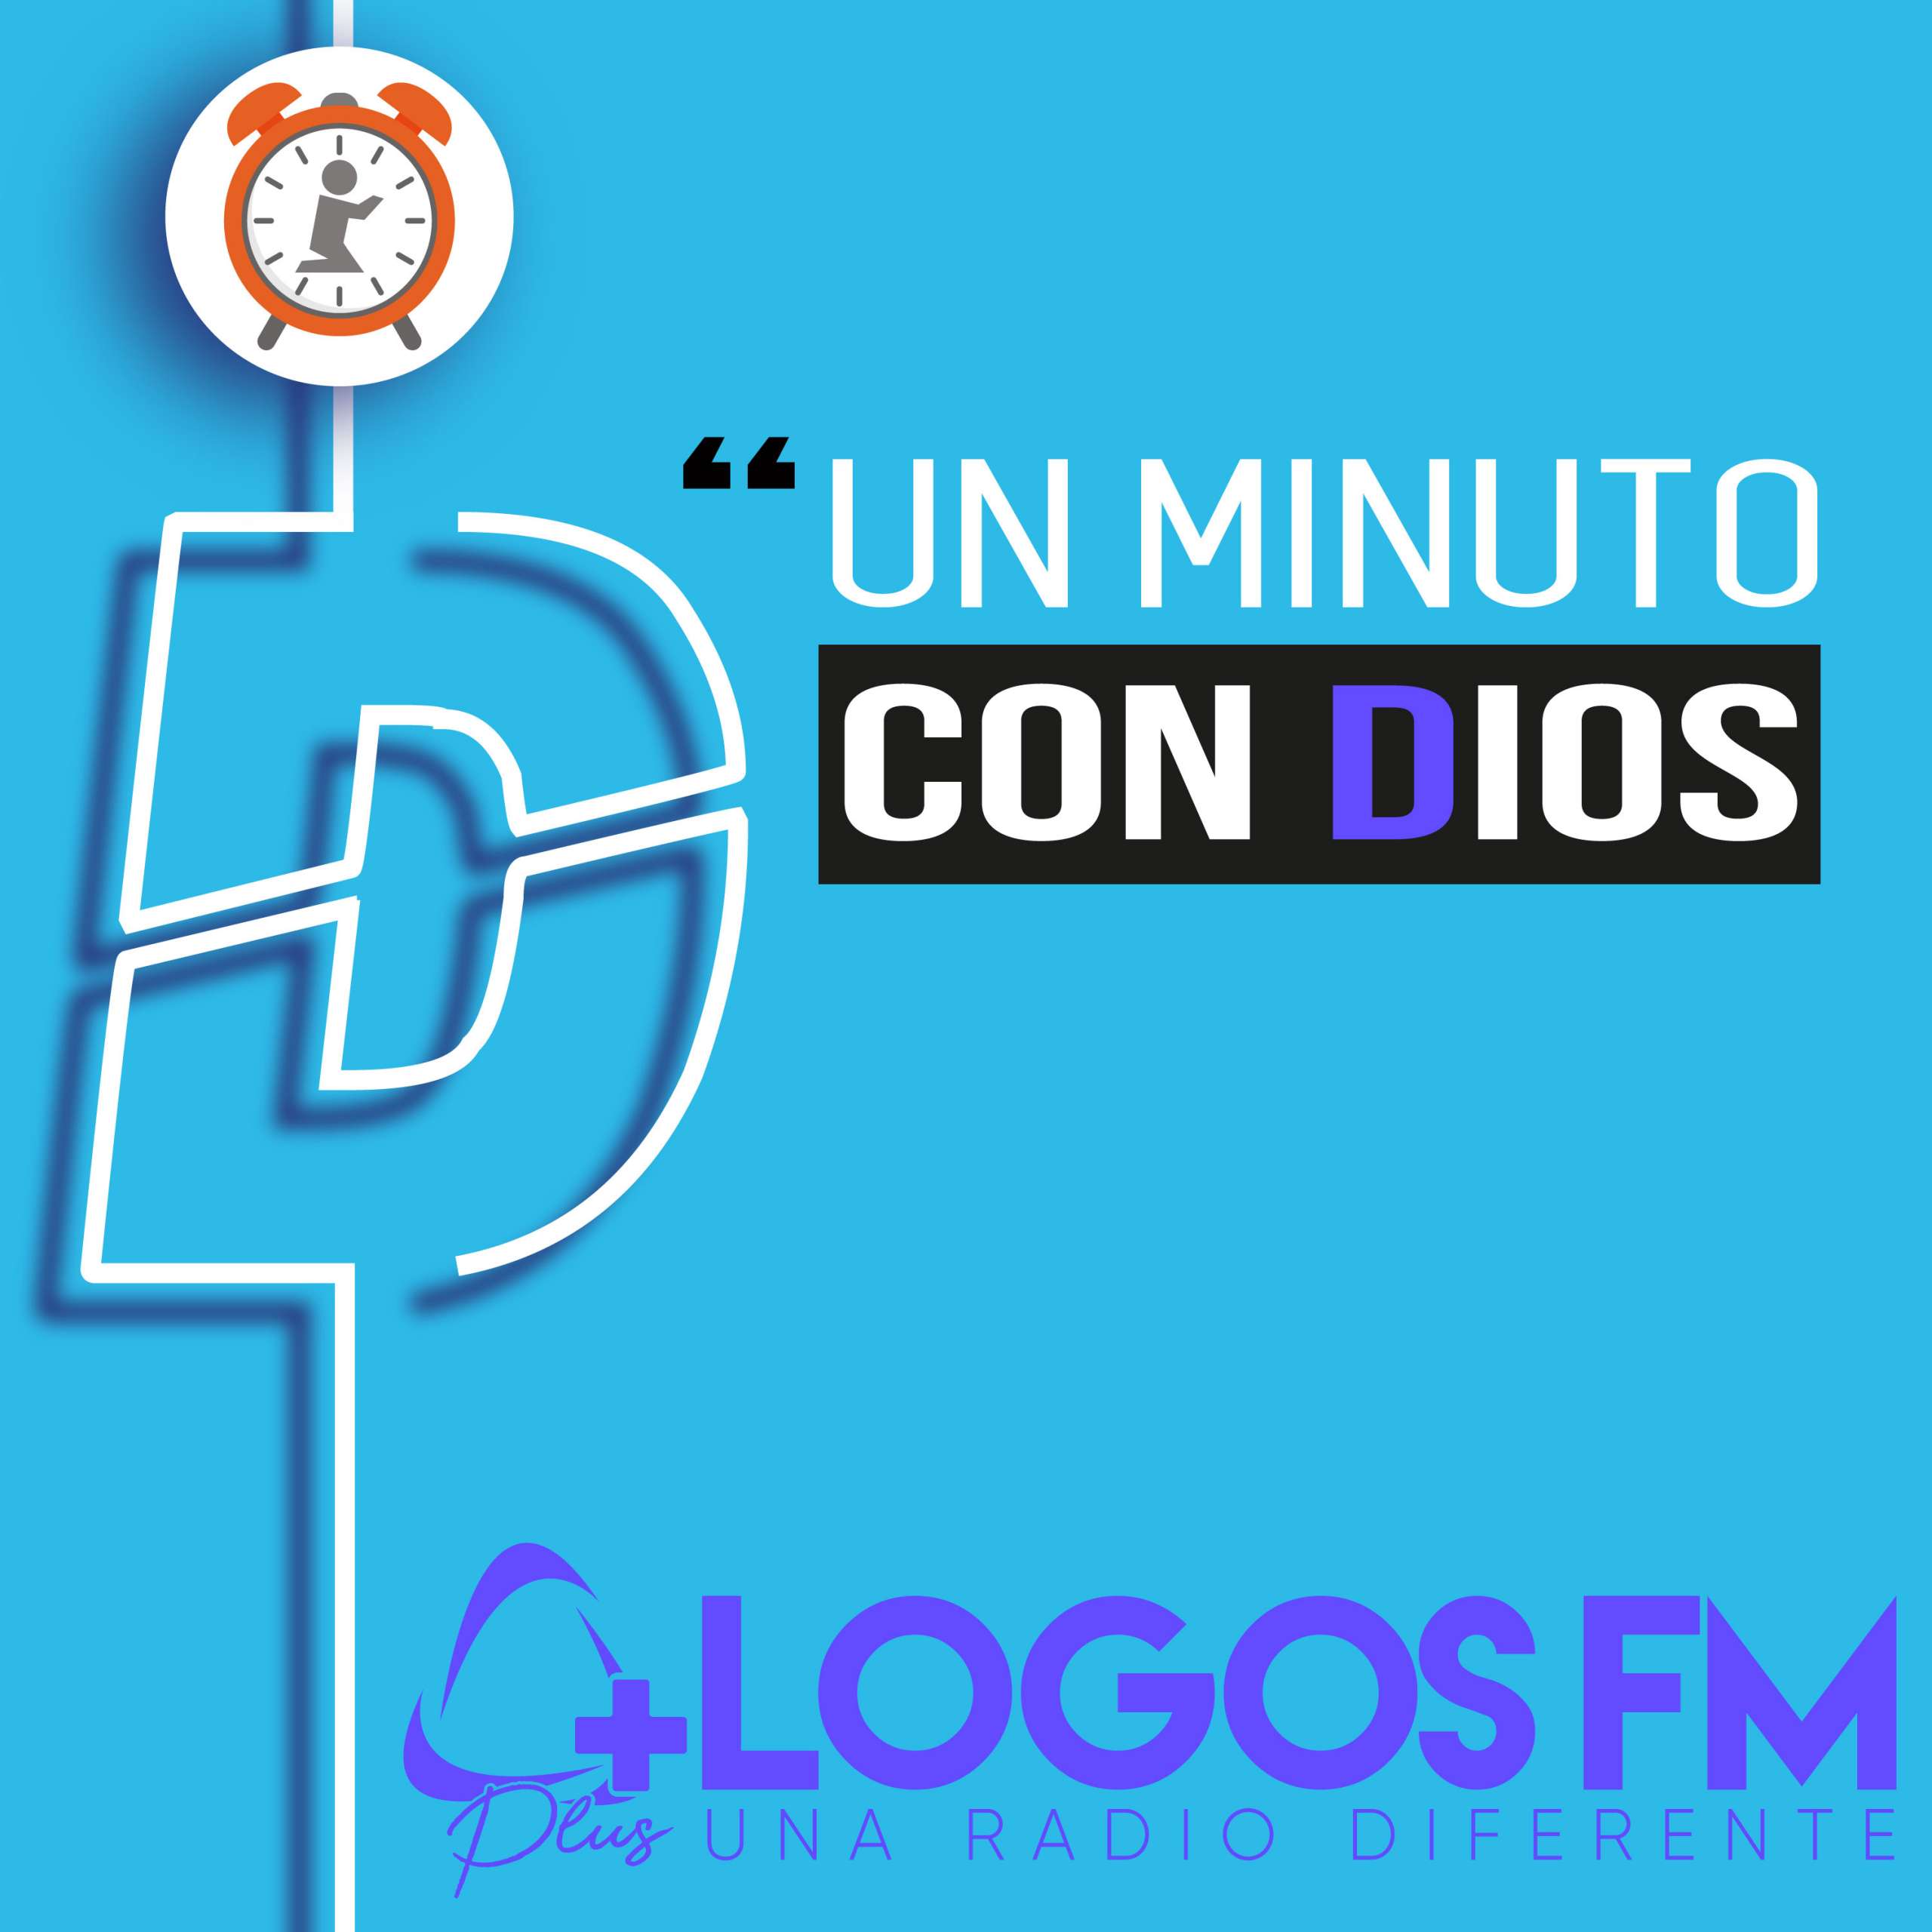 Un minuto con Dios - Episodio 420 - Oniss García